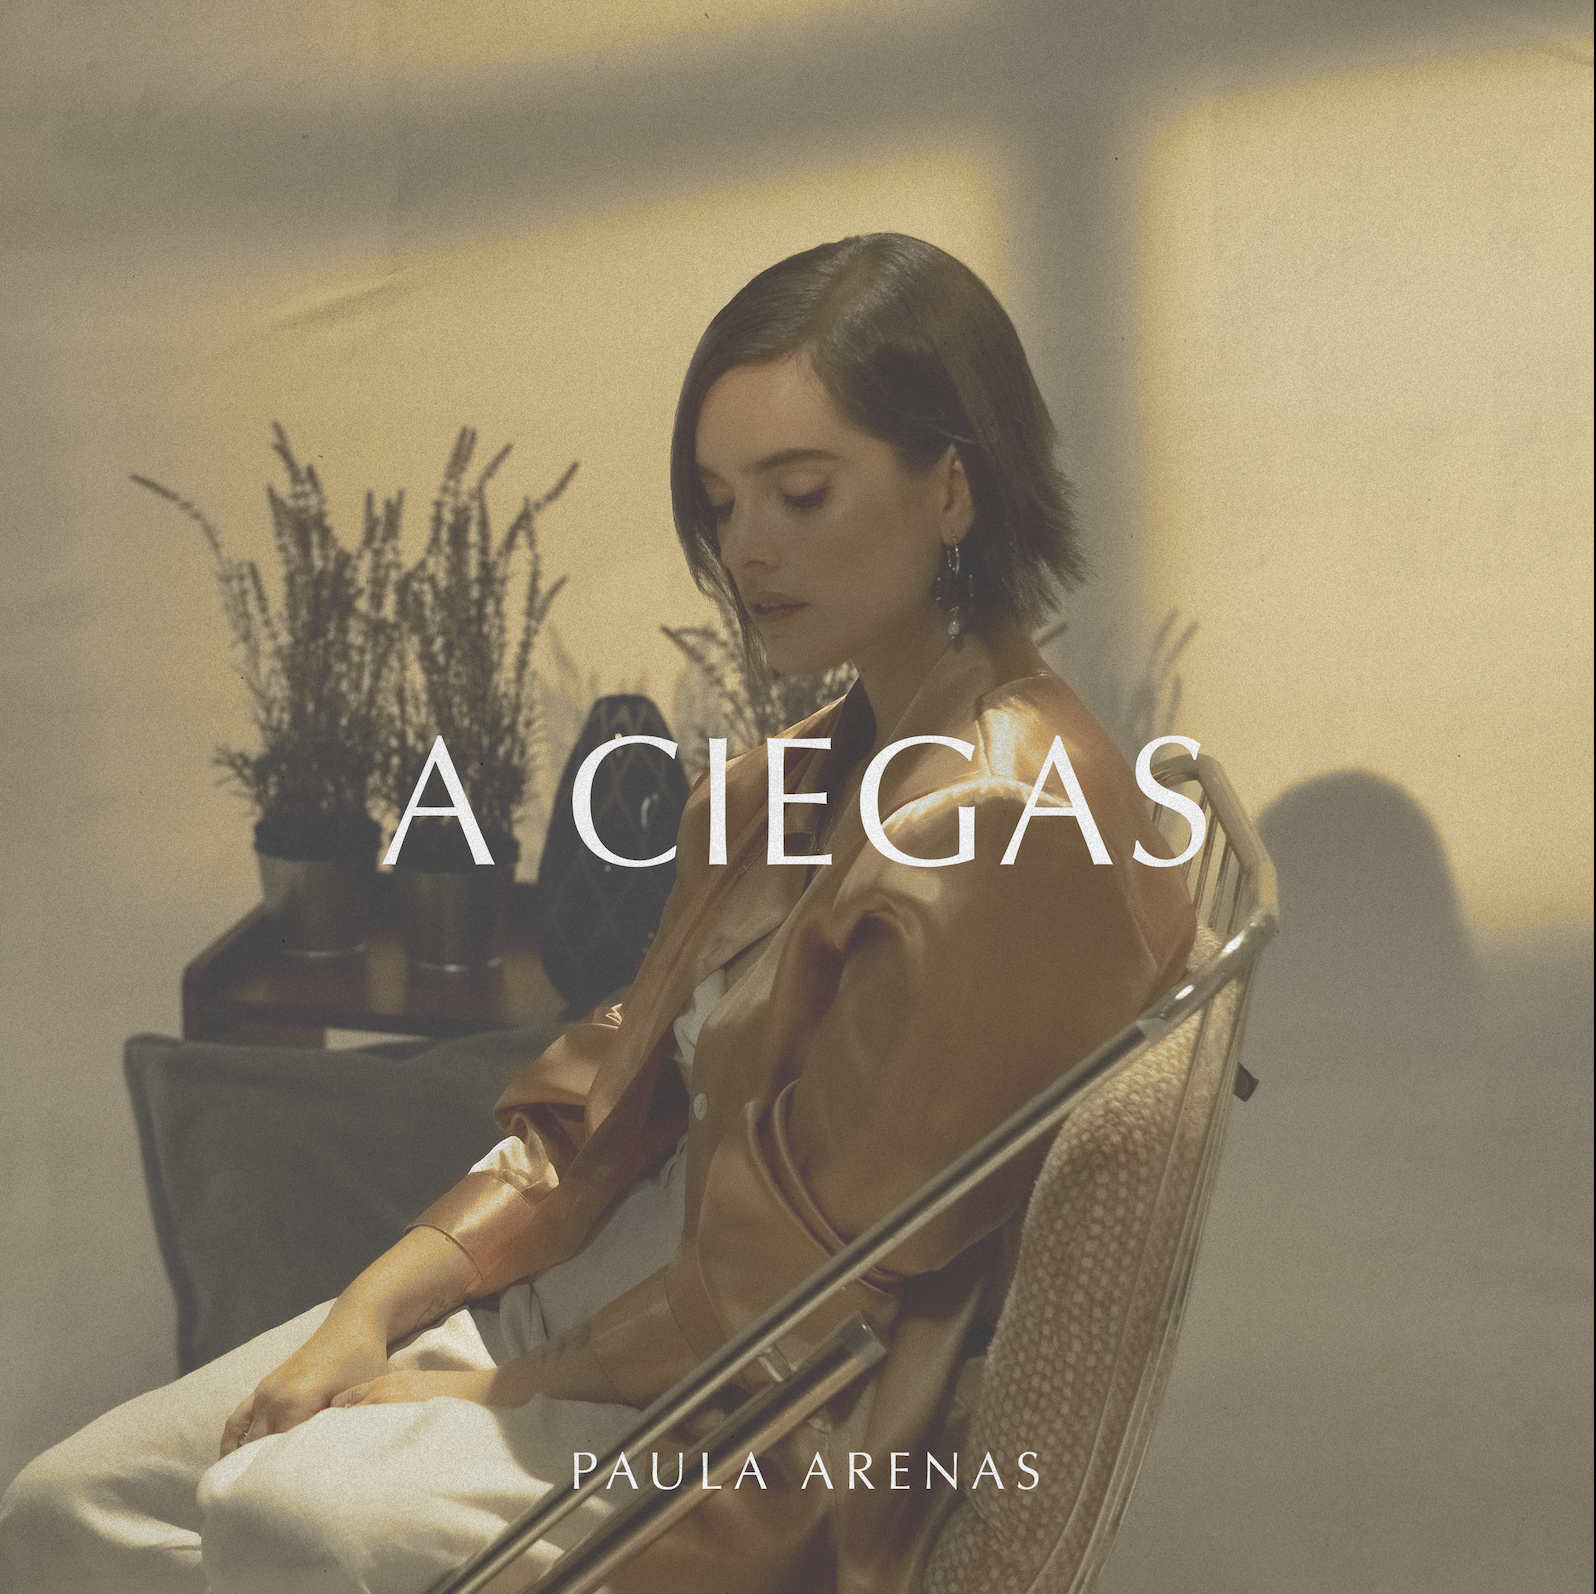 Nuevo sencillo “A Ciegas” de Paula Arenas